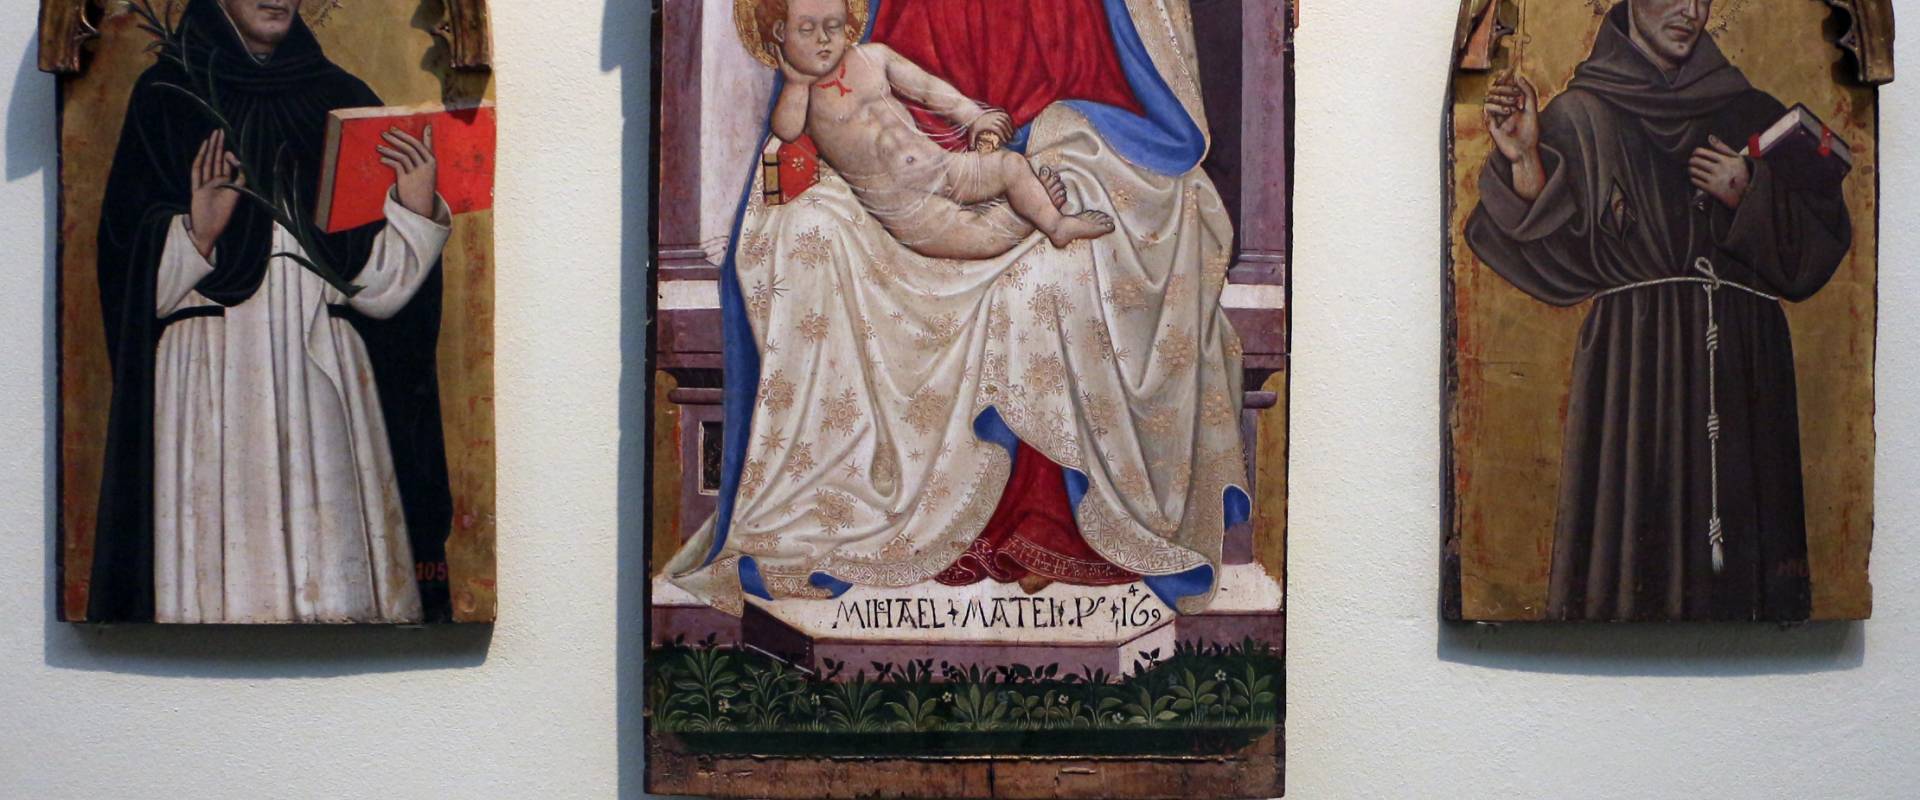 Michele di matteo, polittico frammentario, da s. martino maggiore, 1469 photo by Sailko